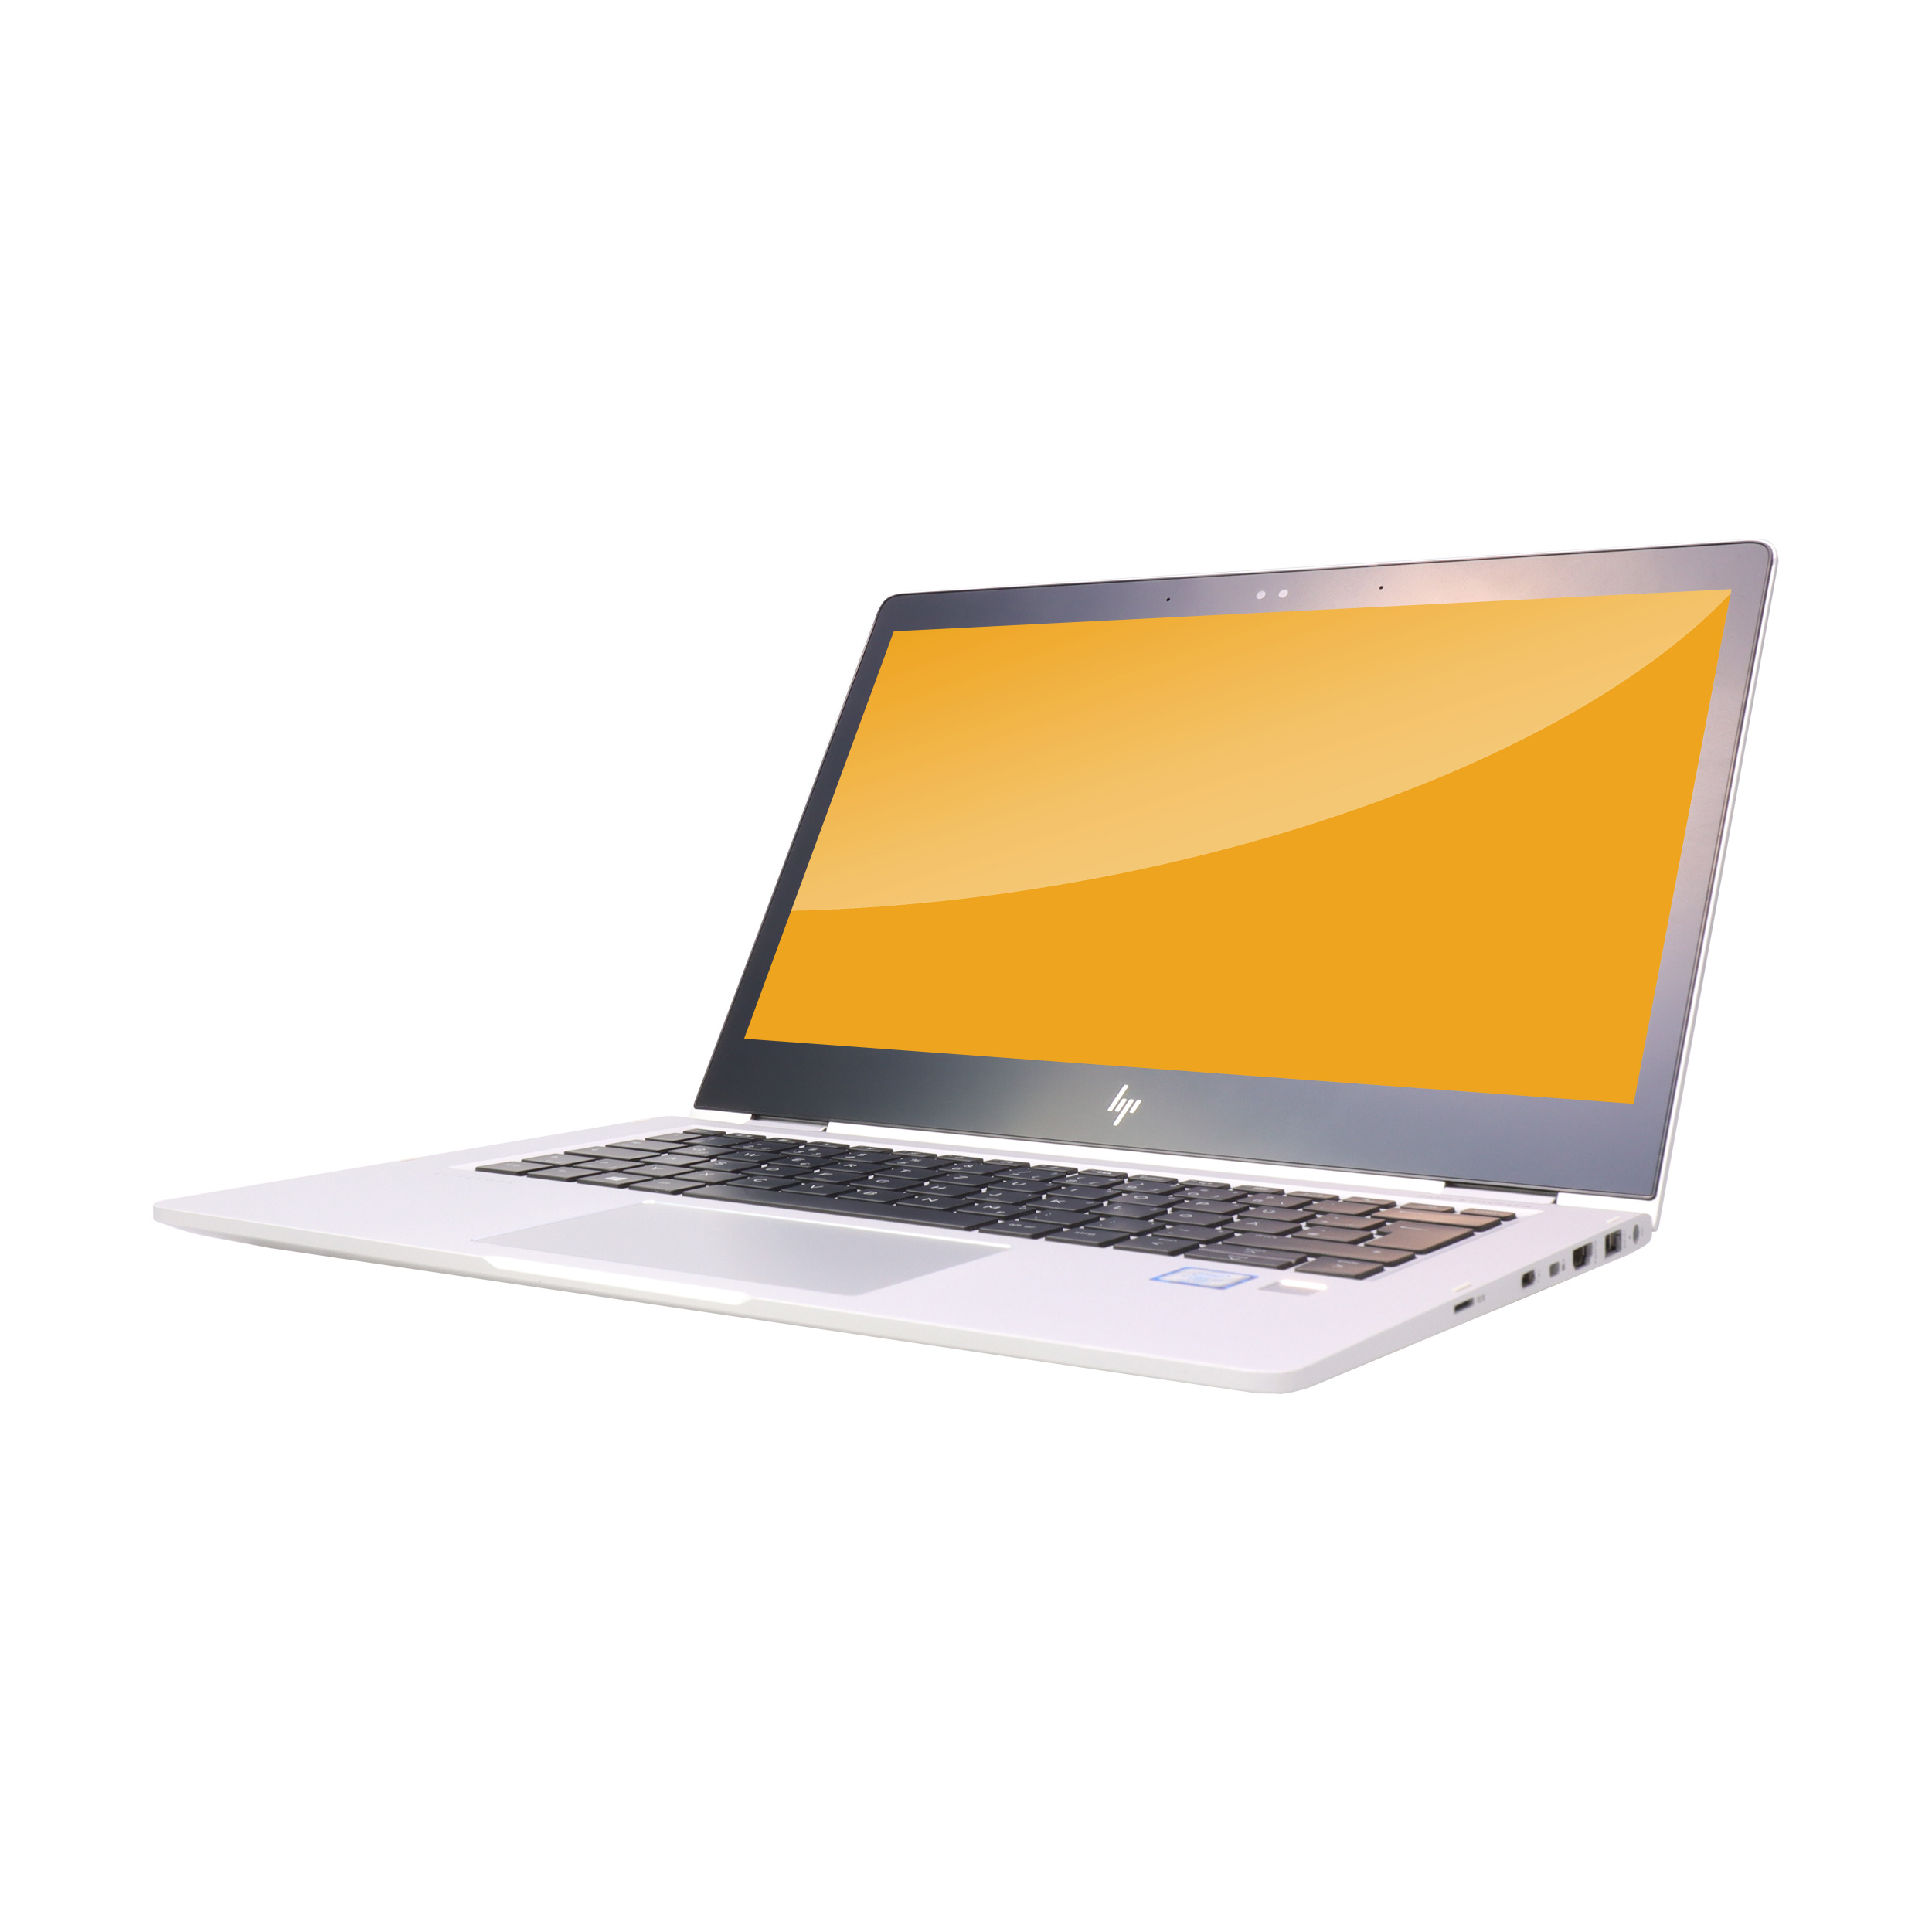 HP - HP EliteBook x360 1030 G2